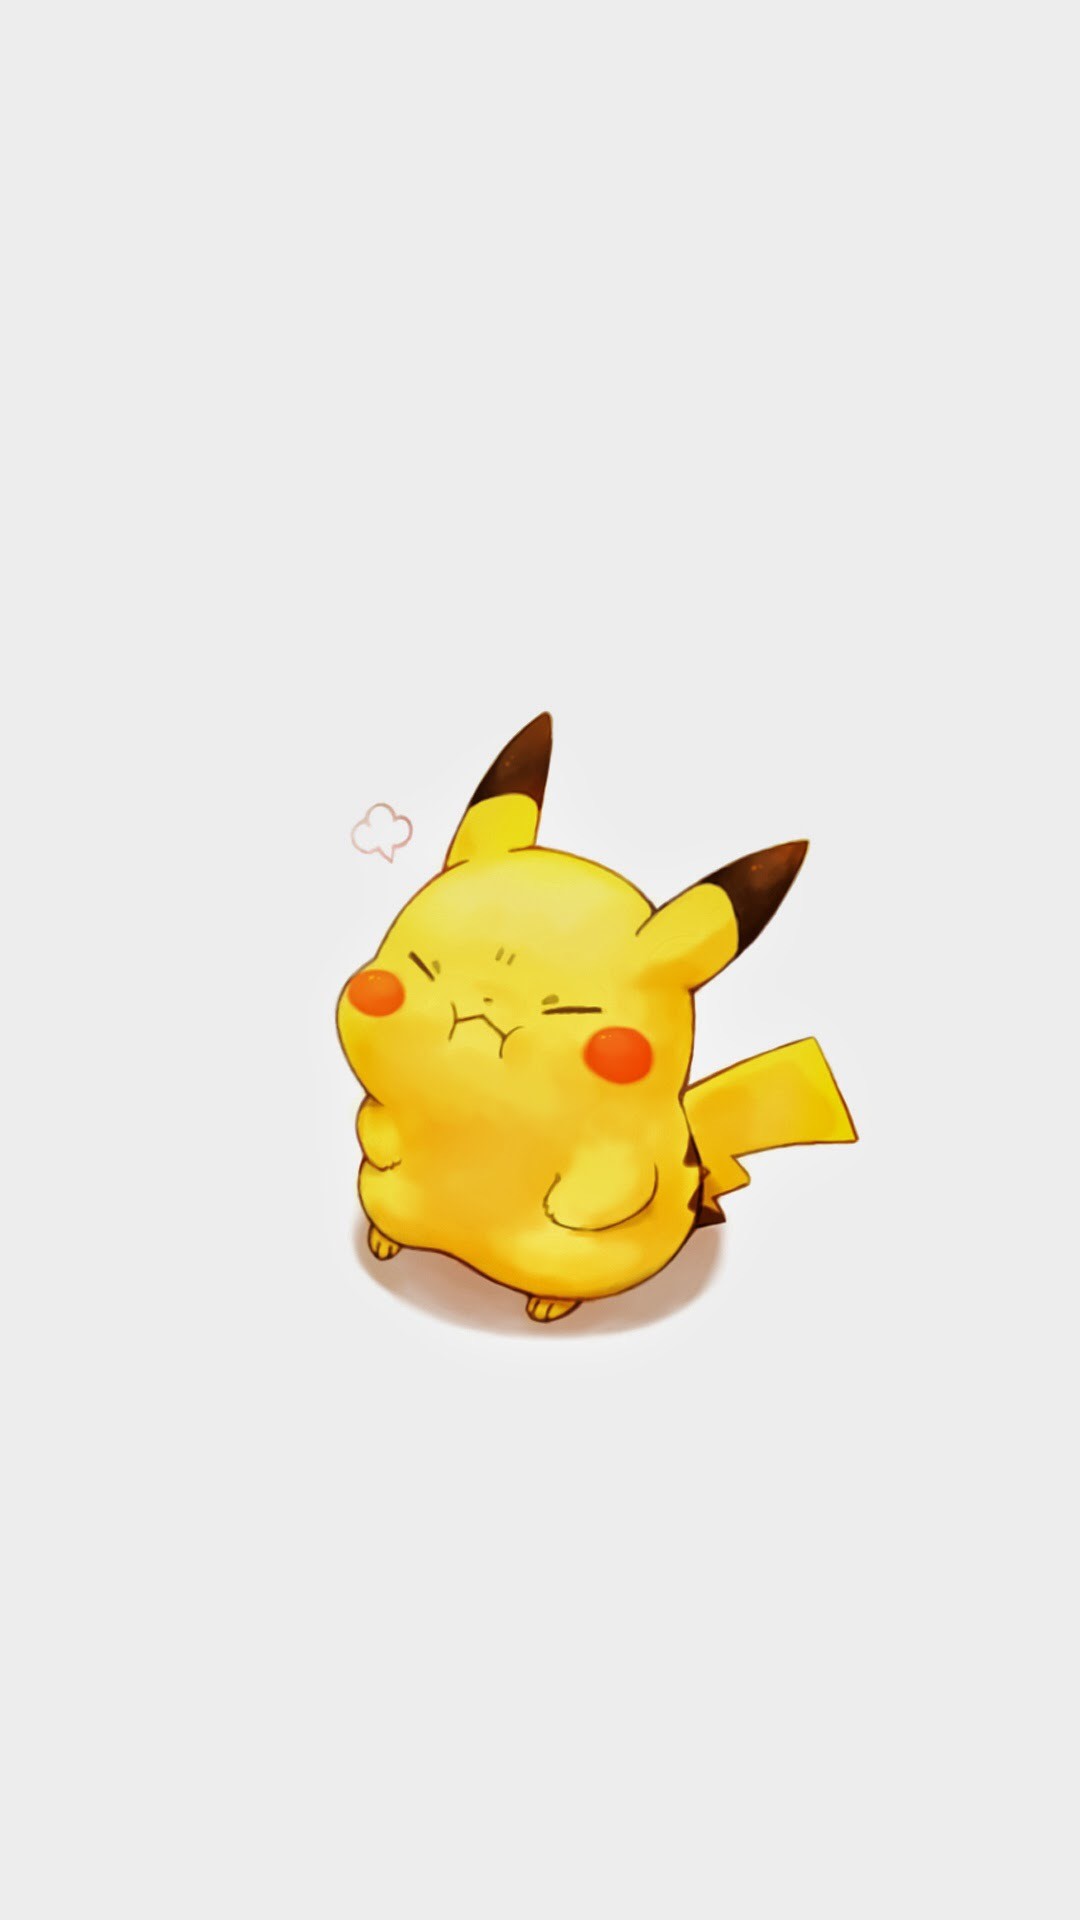 Nếu bạn đang tìm kiếm một hình nền đáng yêu và đáng yêu cho màn hình của mình, thì hình nền Pikachu đáng yêu này sẽ là lựa chọn hoàn hảo cho bạn. Với sự xuất hiện của Pikachu ngộ nghĩnh và đáng yêu này, bạn sẽ luôn được tràn đầy năng lượng và niềm vui trong cả ngày làm việc.